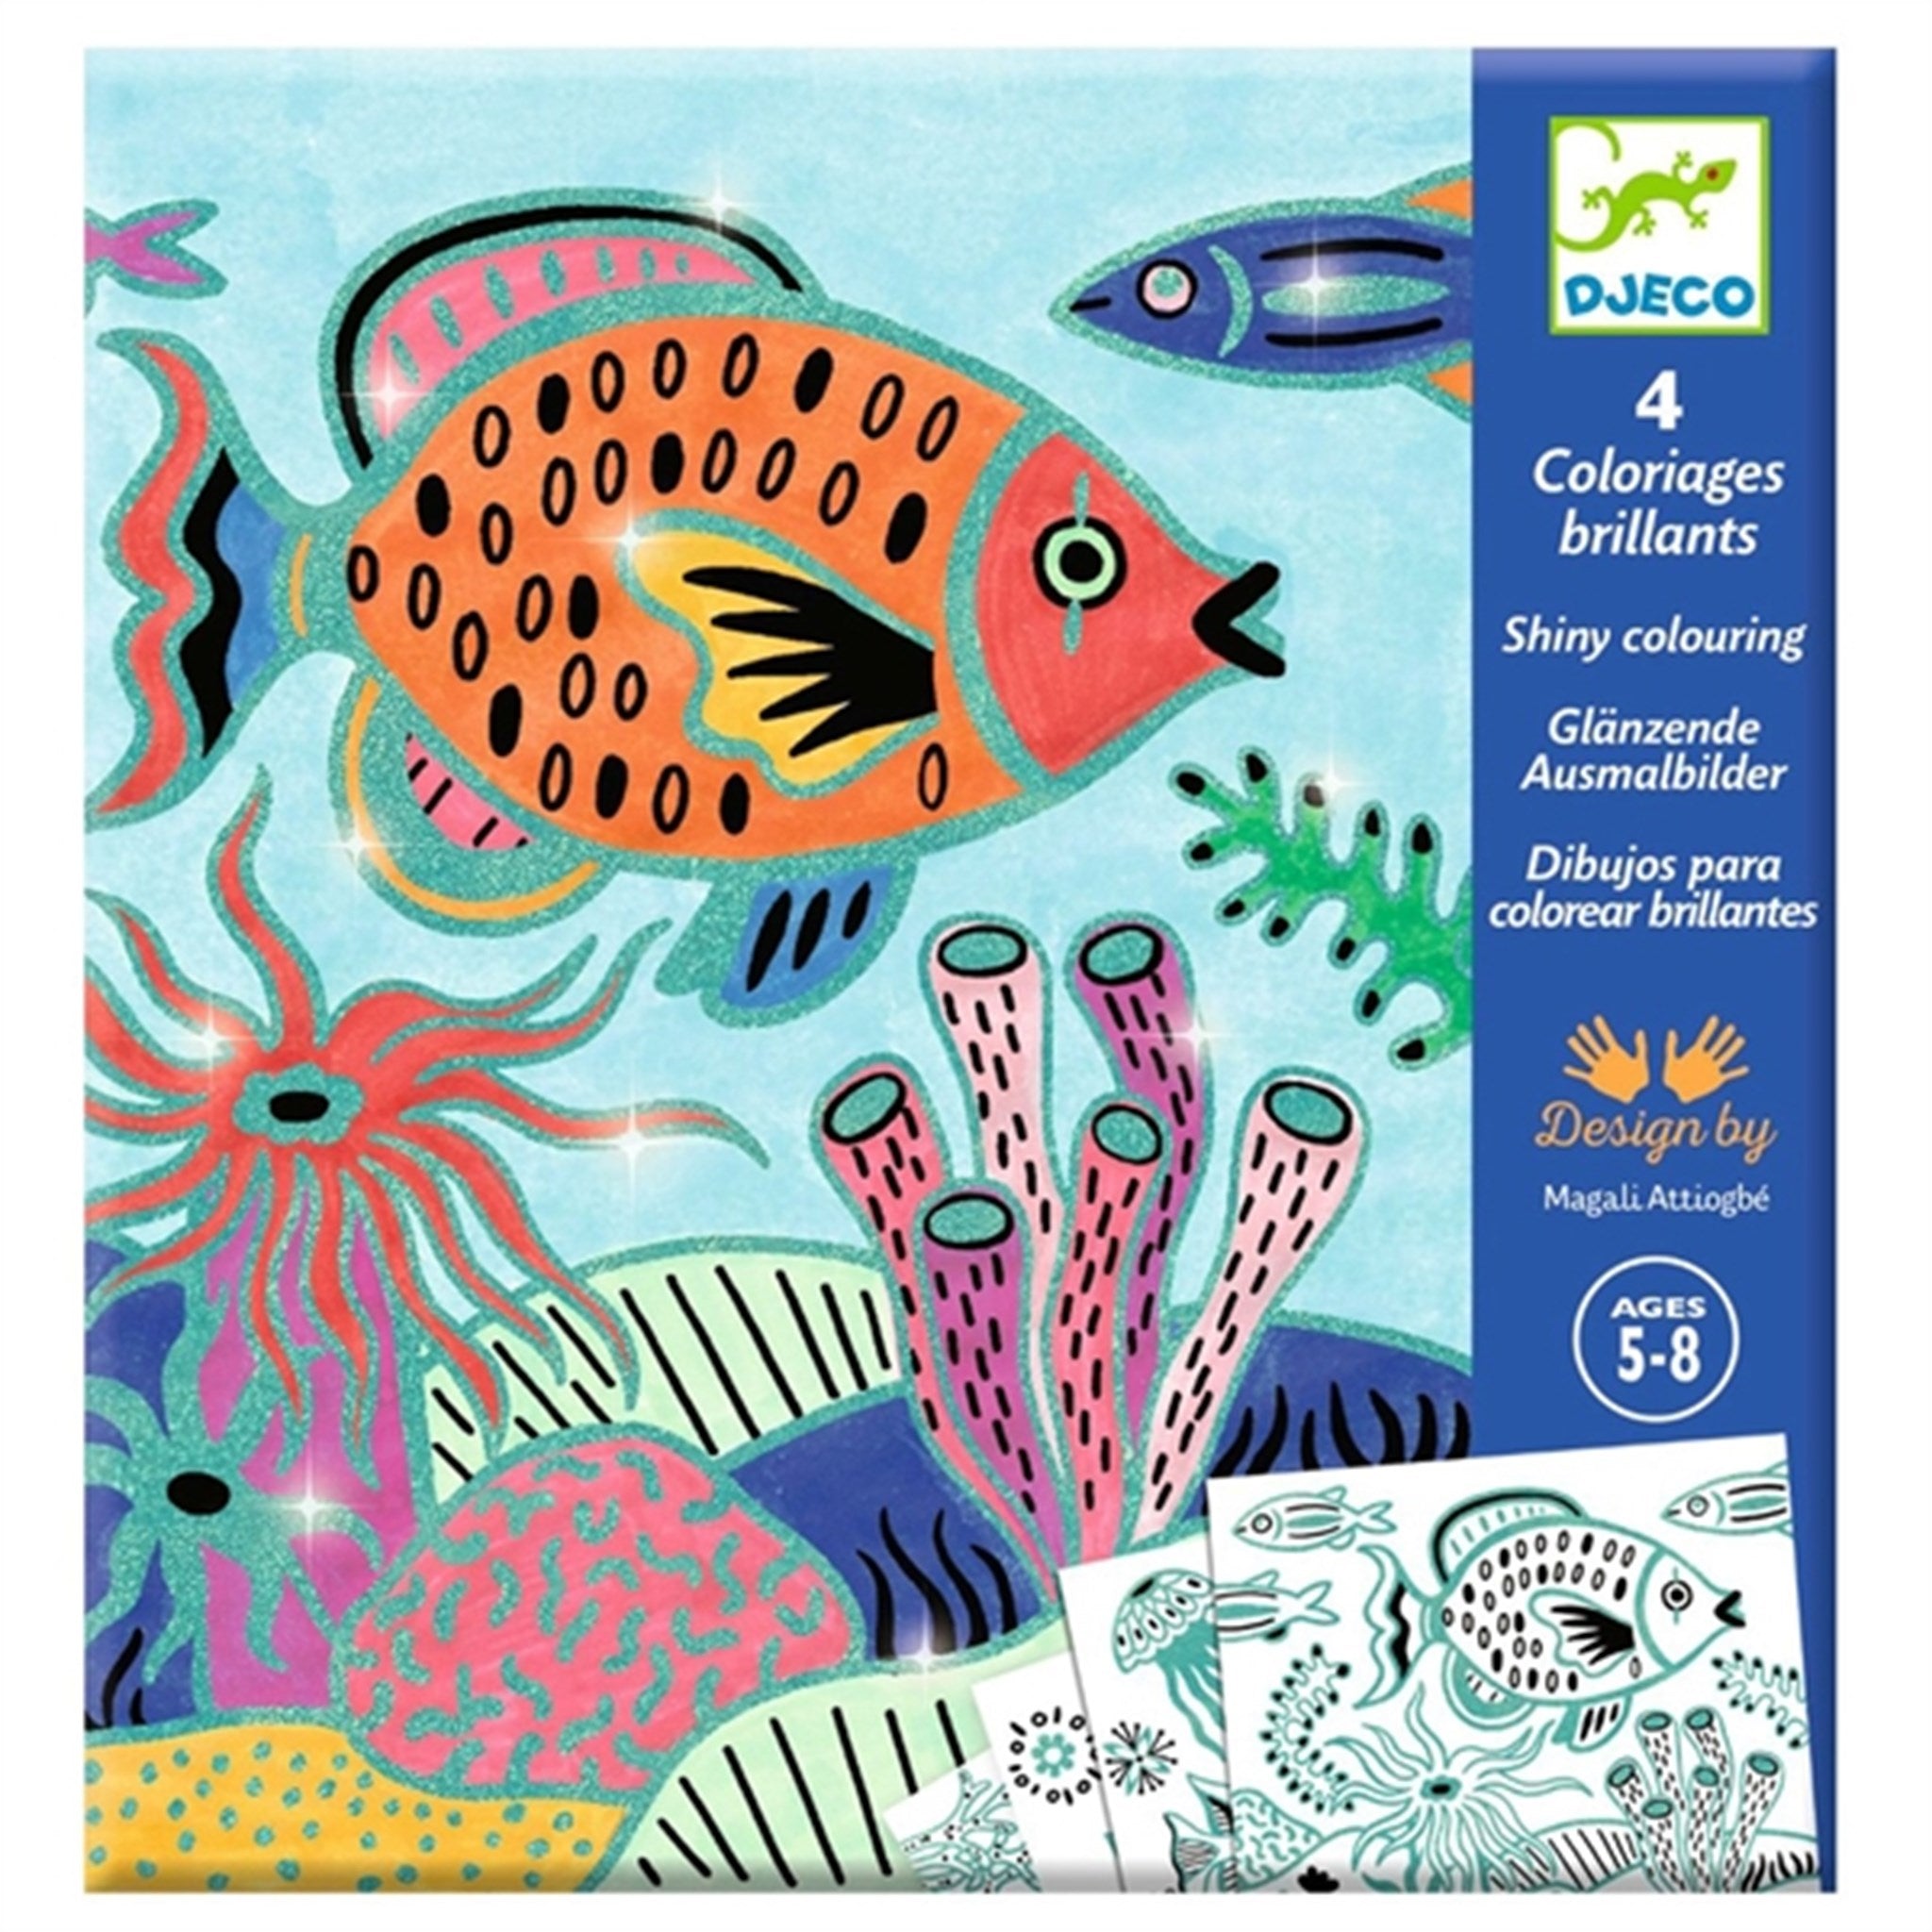 Buy Djeco Coloriages Brilliant Under the Sea | Luksusbaby